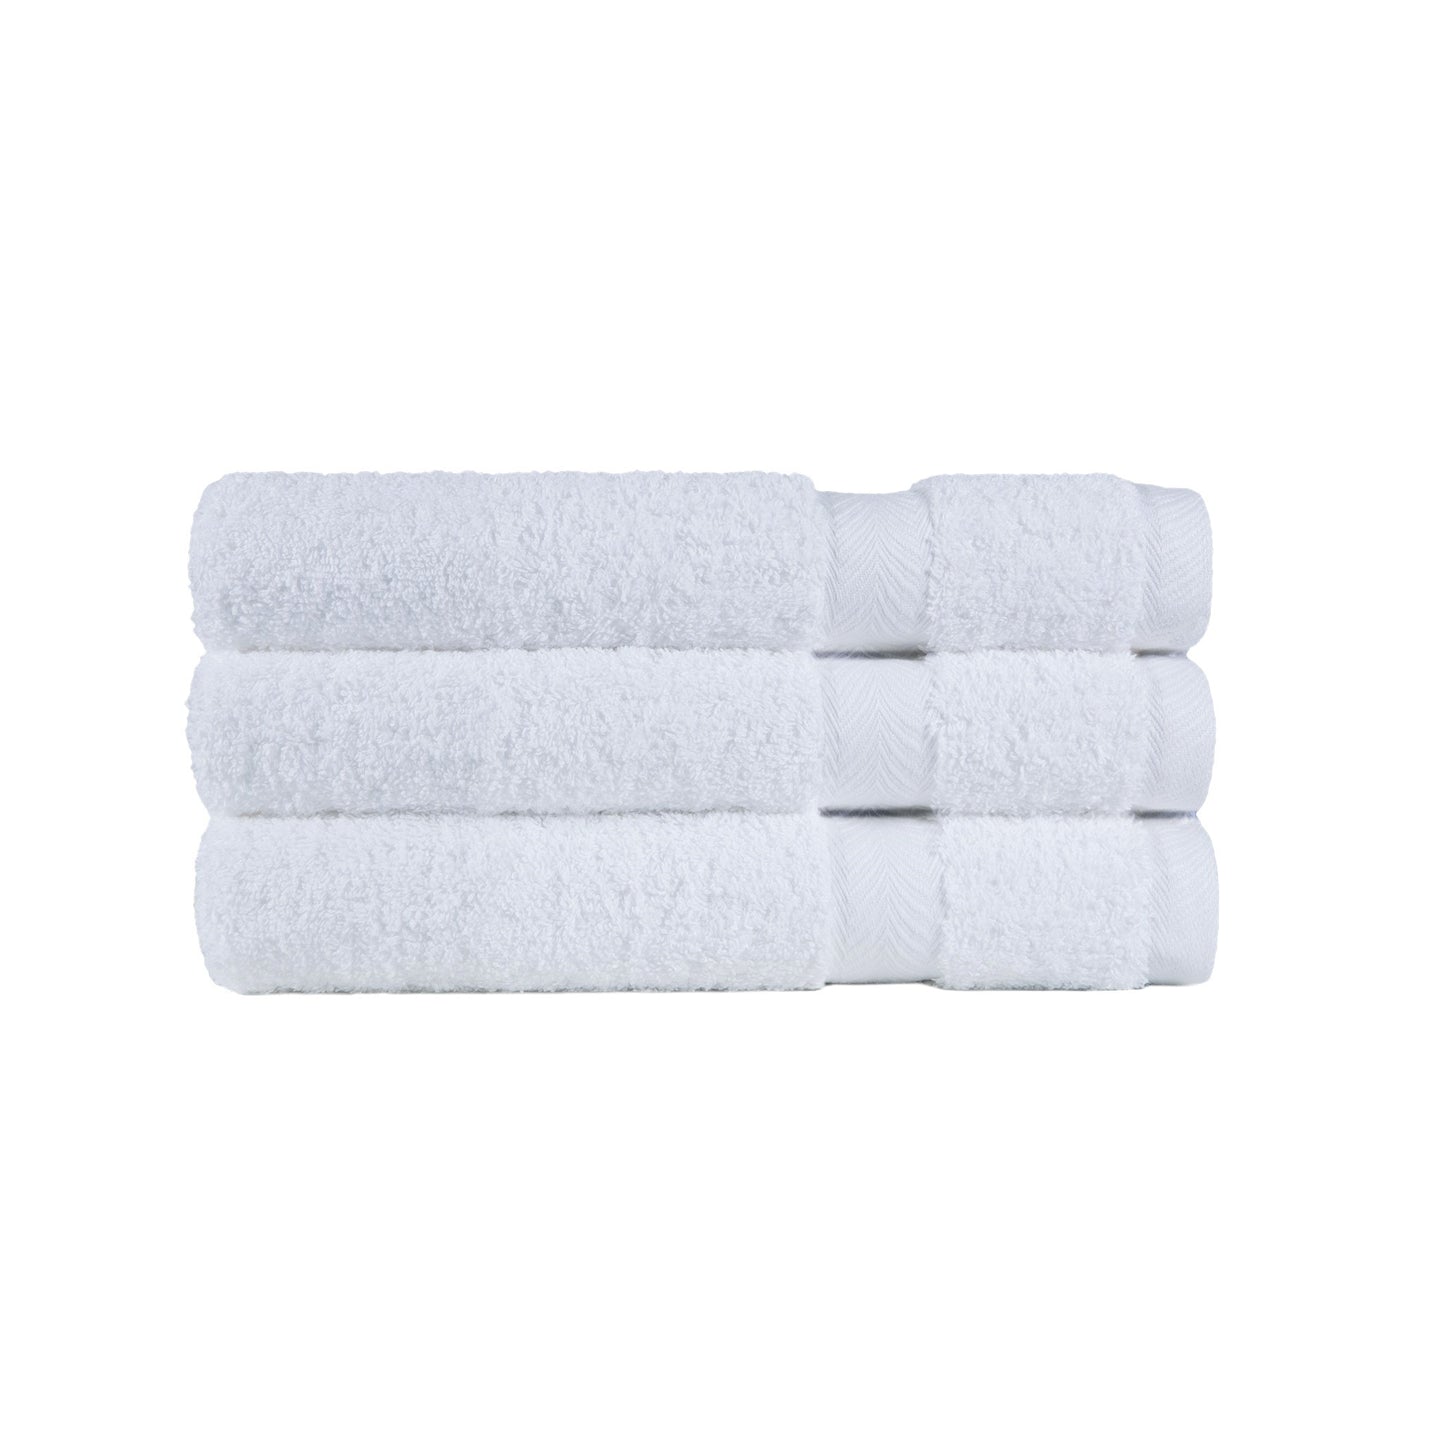 Deluxe Hand Towel 650 GSM 100% Cotton